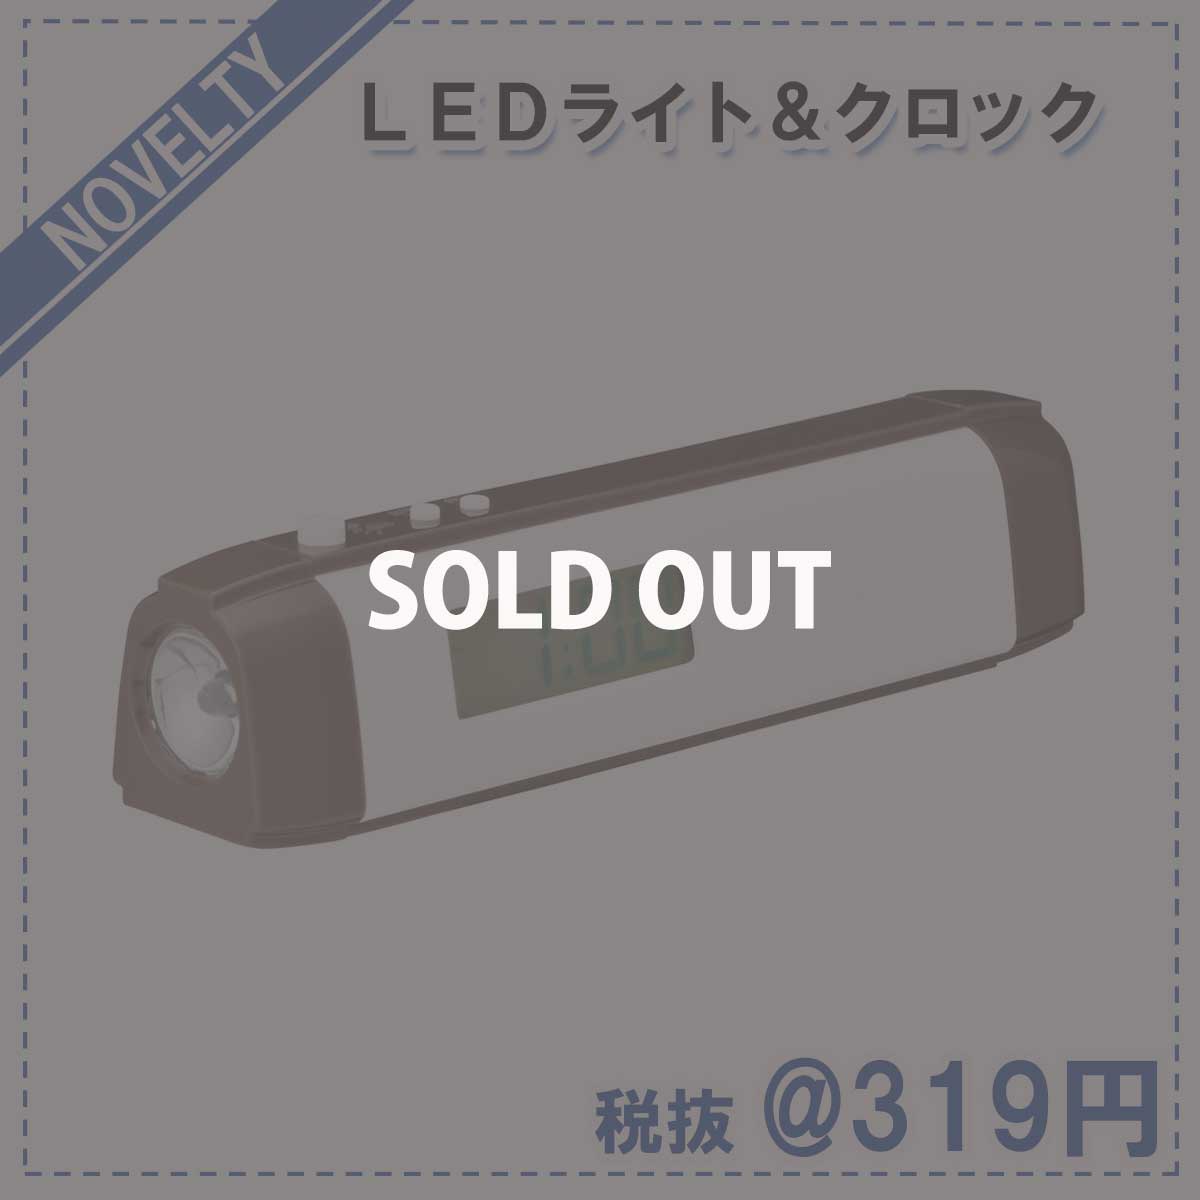 【ノベルティグッズ】 LEDライト&クロック